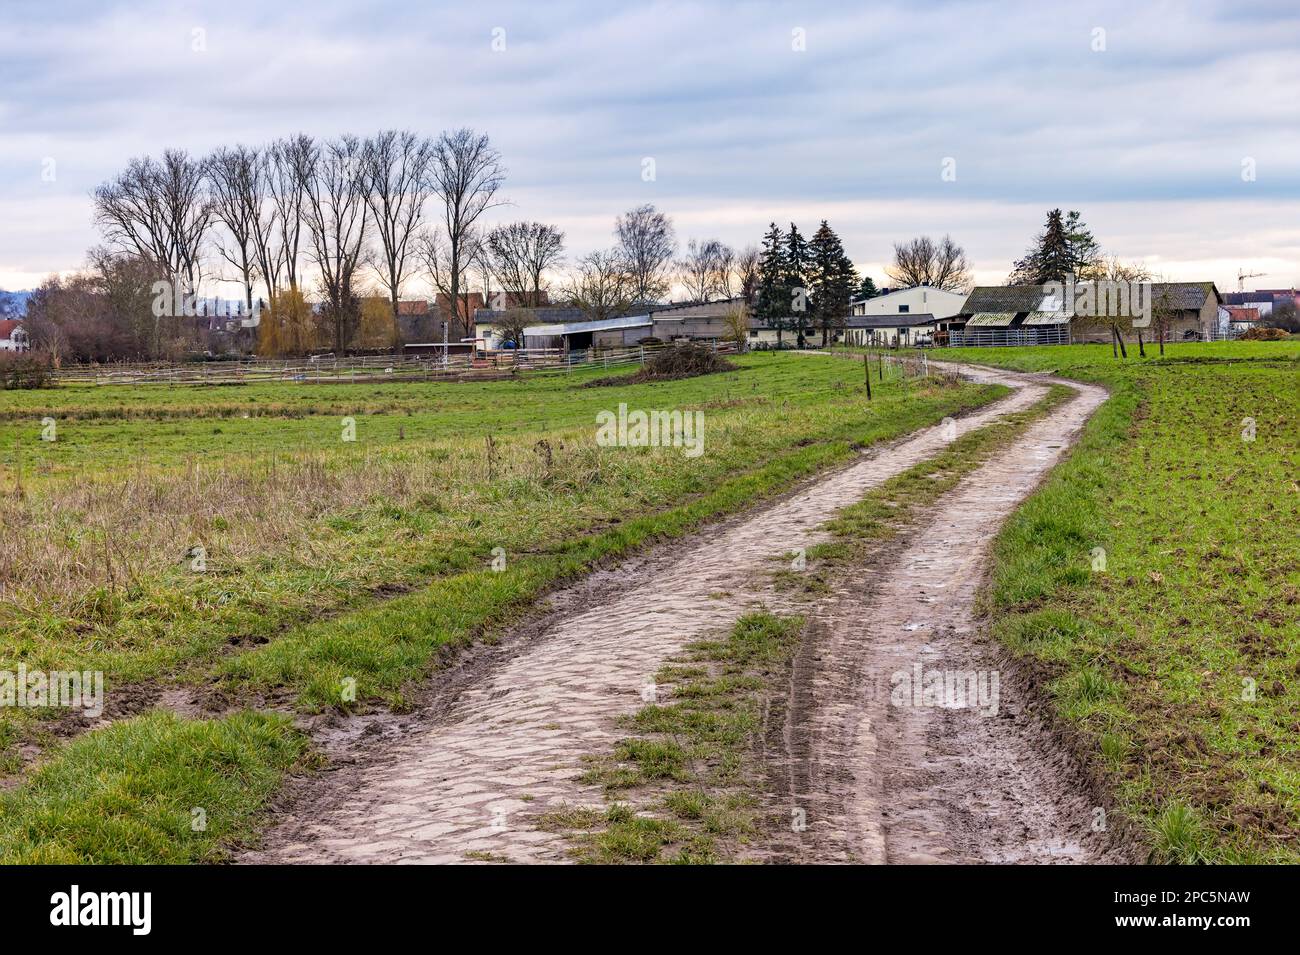 Ländliche Idylle mit unbefestigten Straßen, Wiesen und Bauernhäusern im Winter, Deutschland Stockfoto